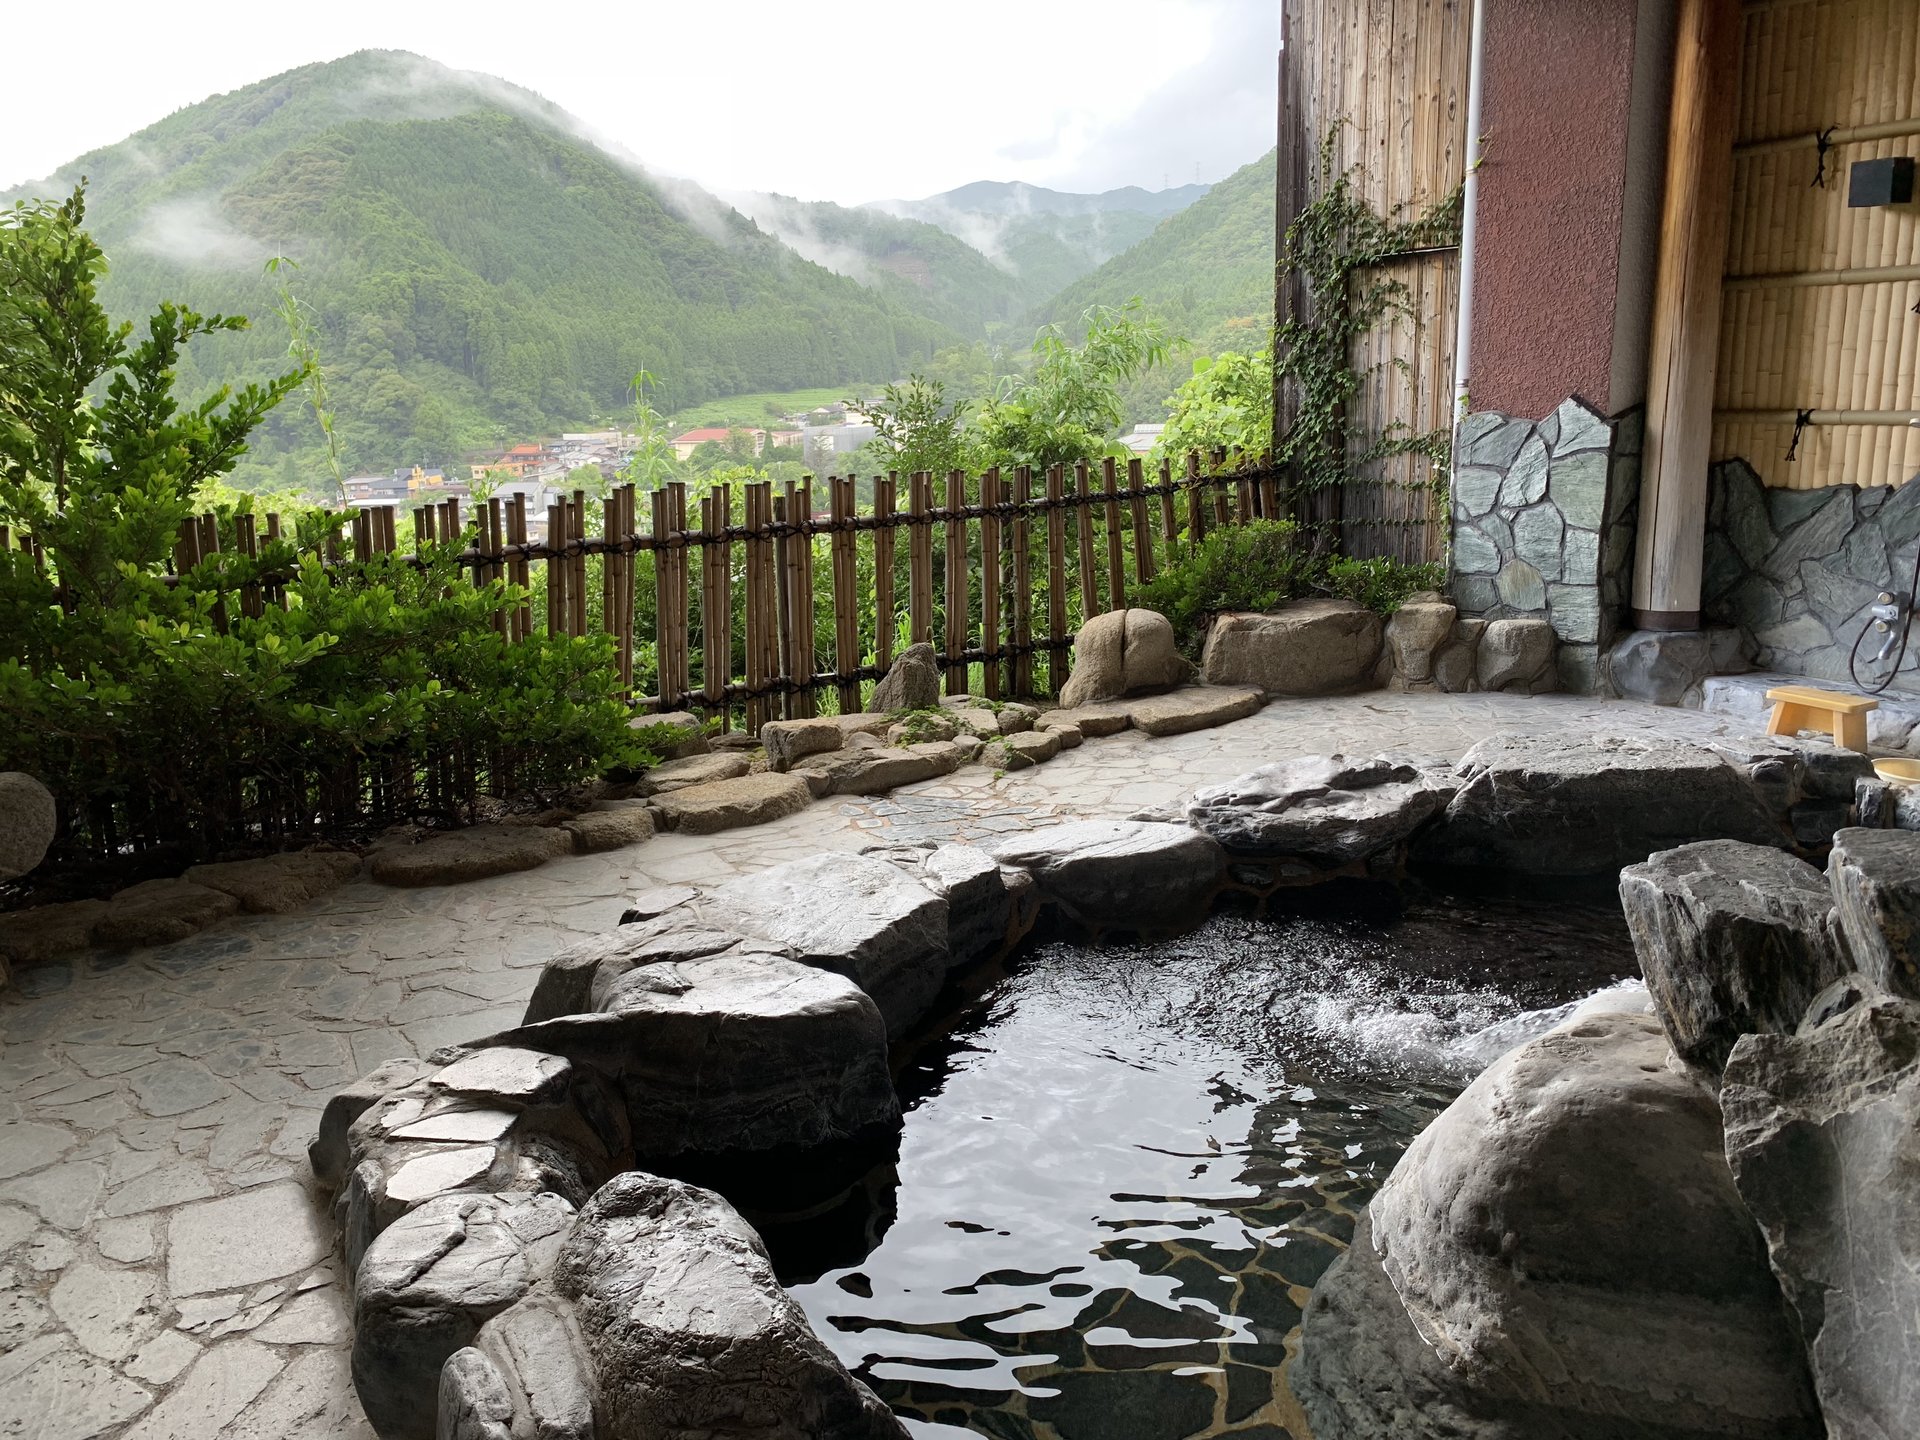 初夏の一日、目に鮮やかな緑を感じるレストランと温泉で佐賀の自然を満喫しよう‼︎